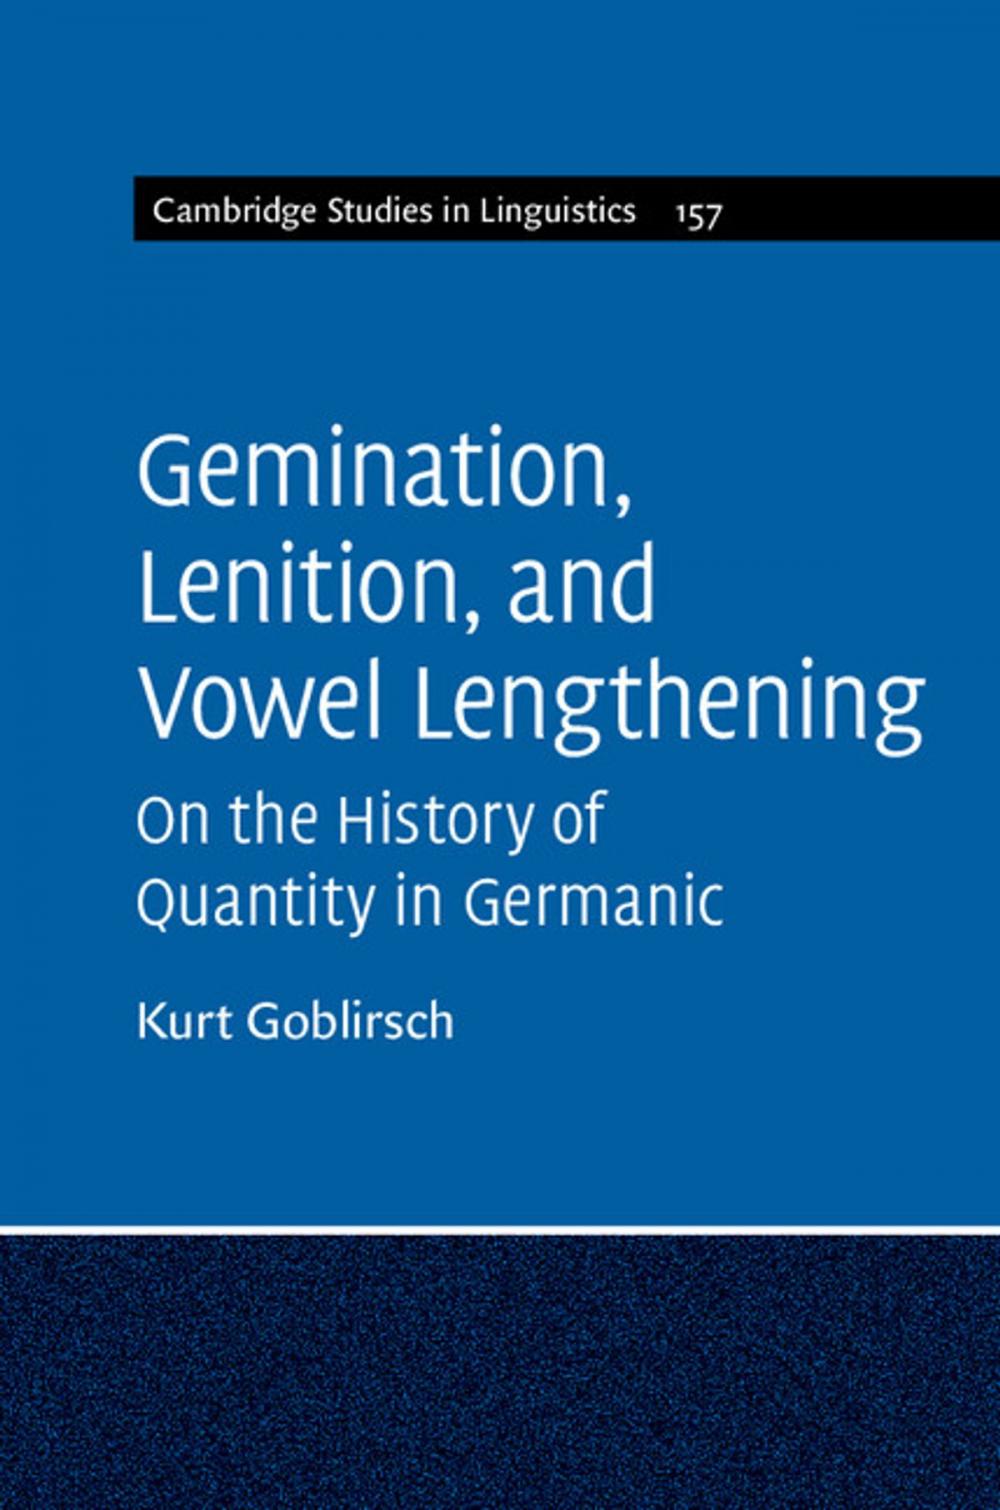 Big bigCover of Gemination, Lenition, and Vowel Lengthening: Volume 157